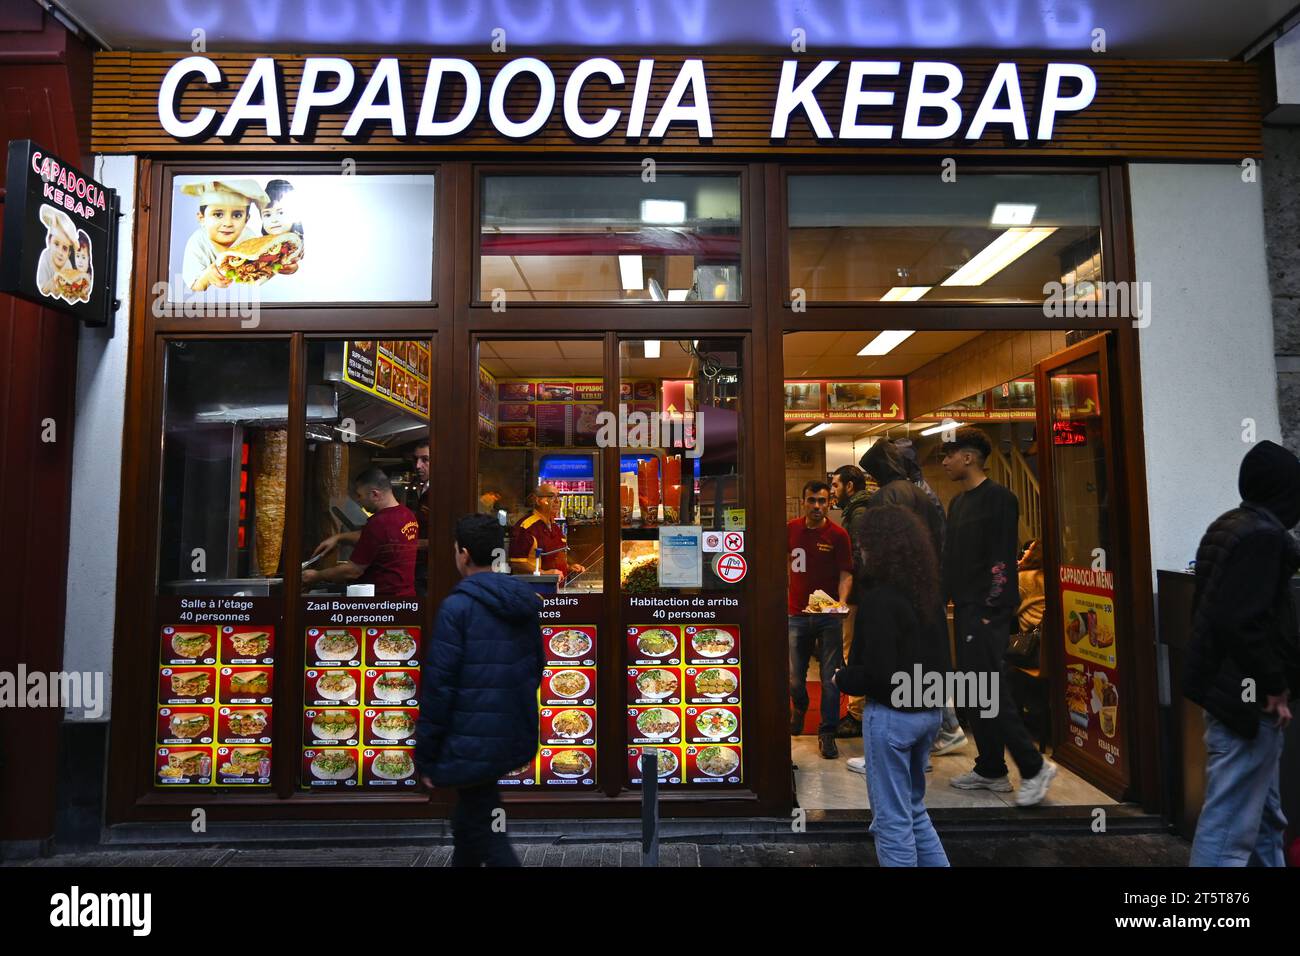 «Capadocia kebab» un magasin de kebab dans le centre de bruxelles – Bruxelles Belgique – 23 octobre 2023 Banque D'Images